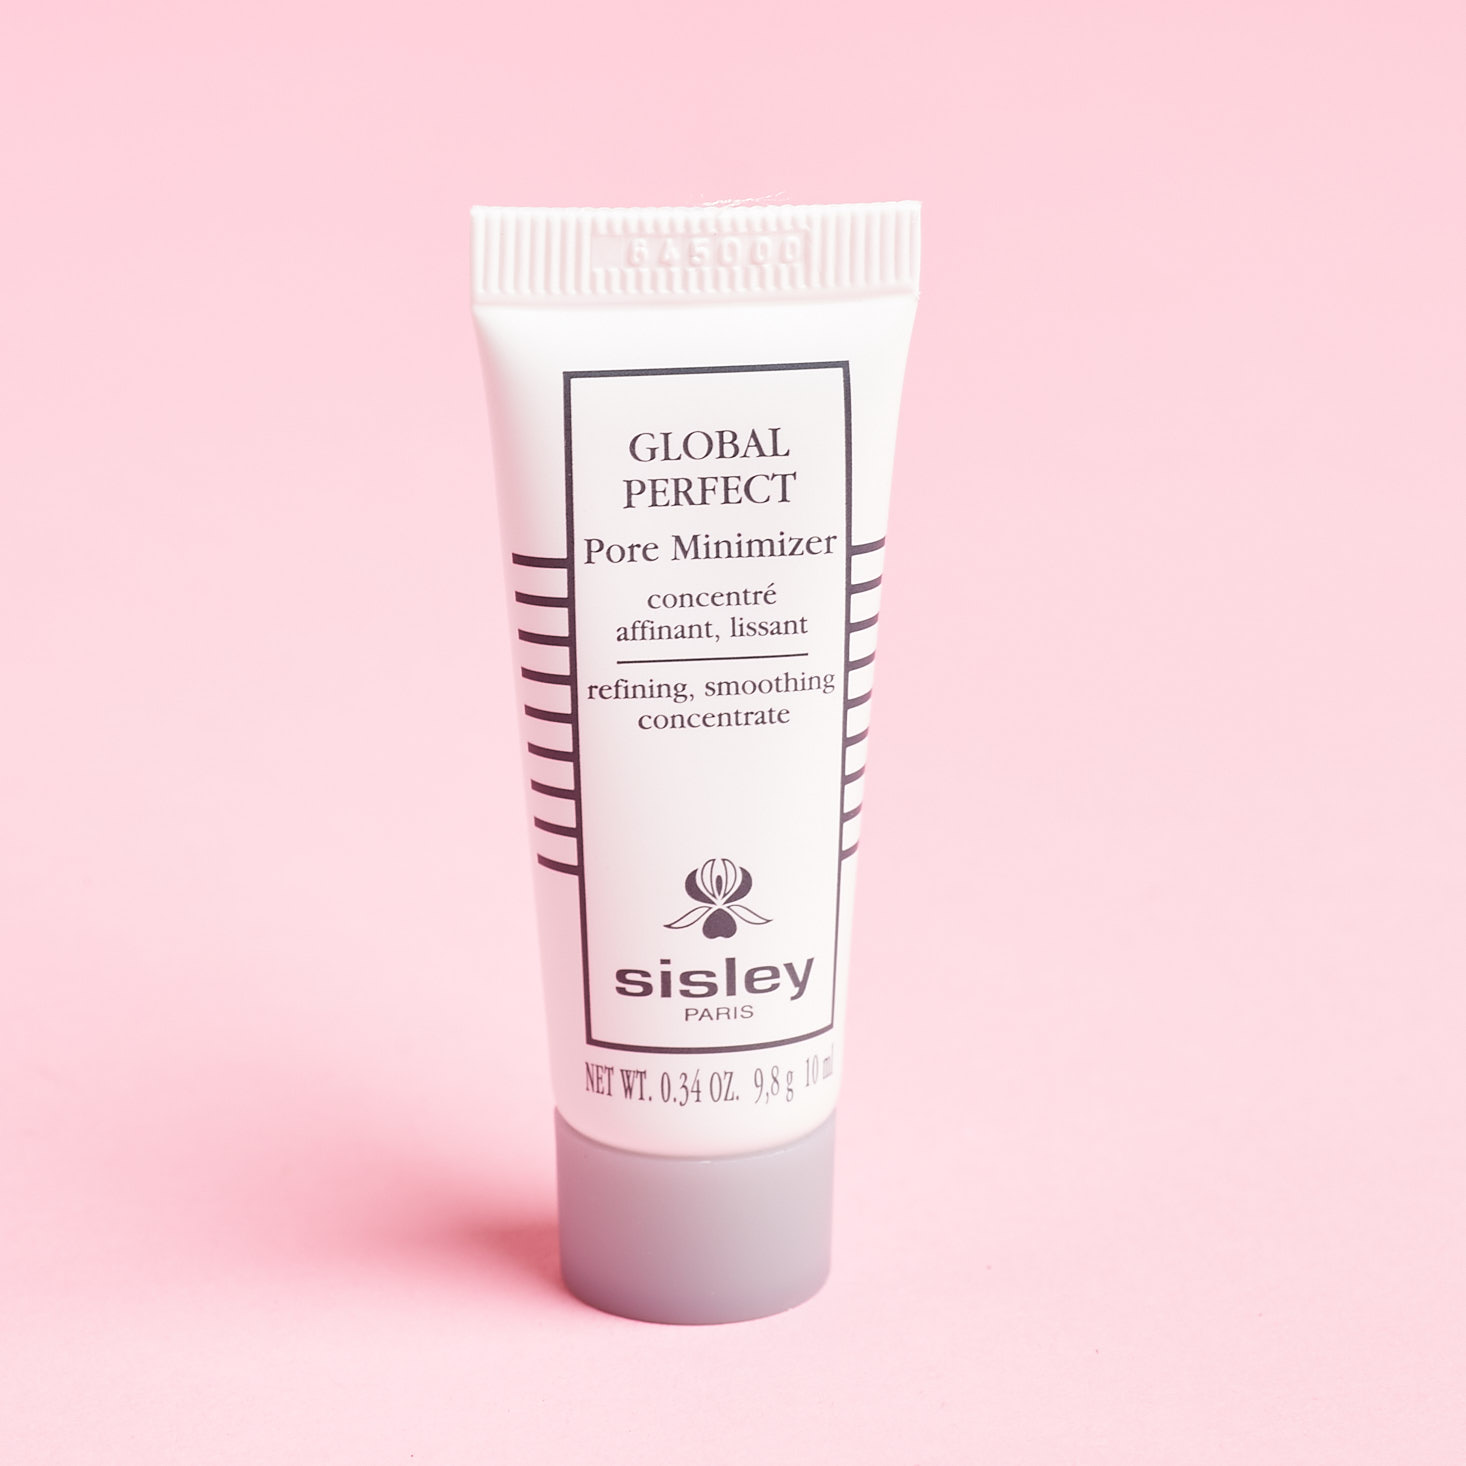 Sisley April 2019 beauty box review